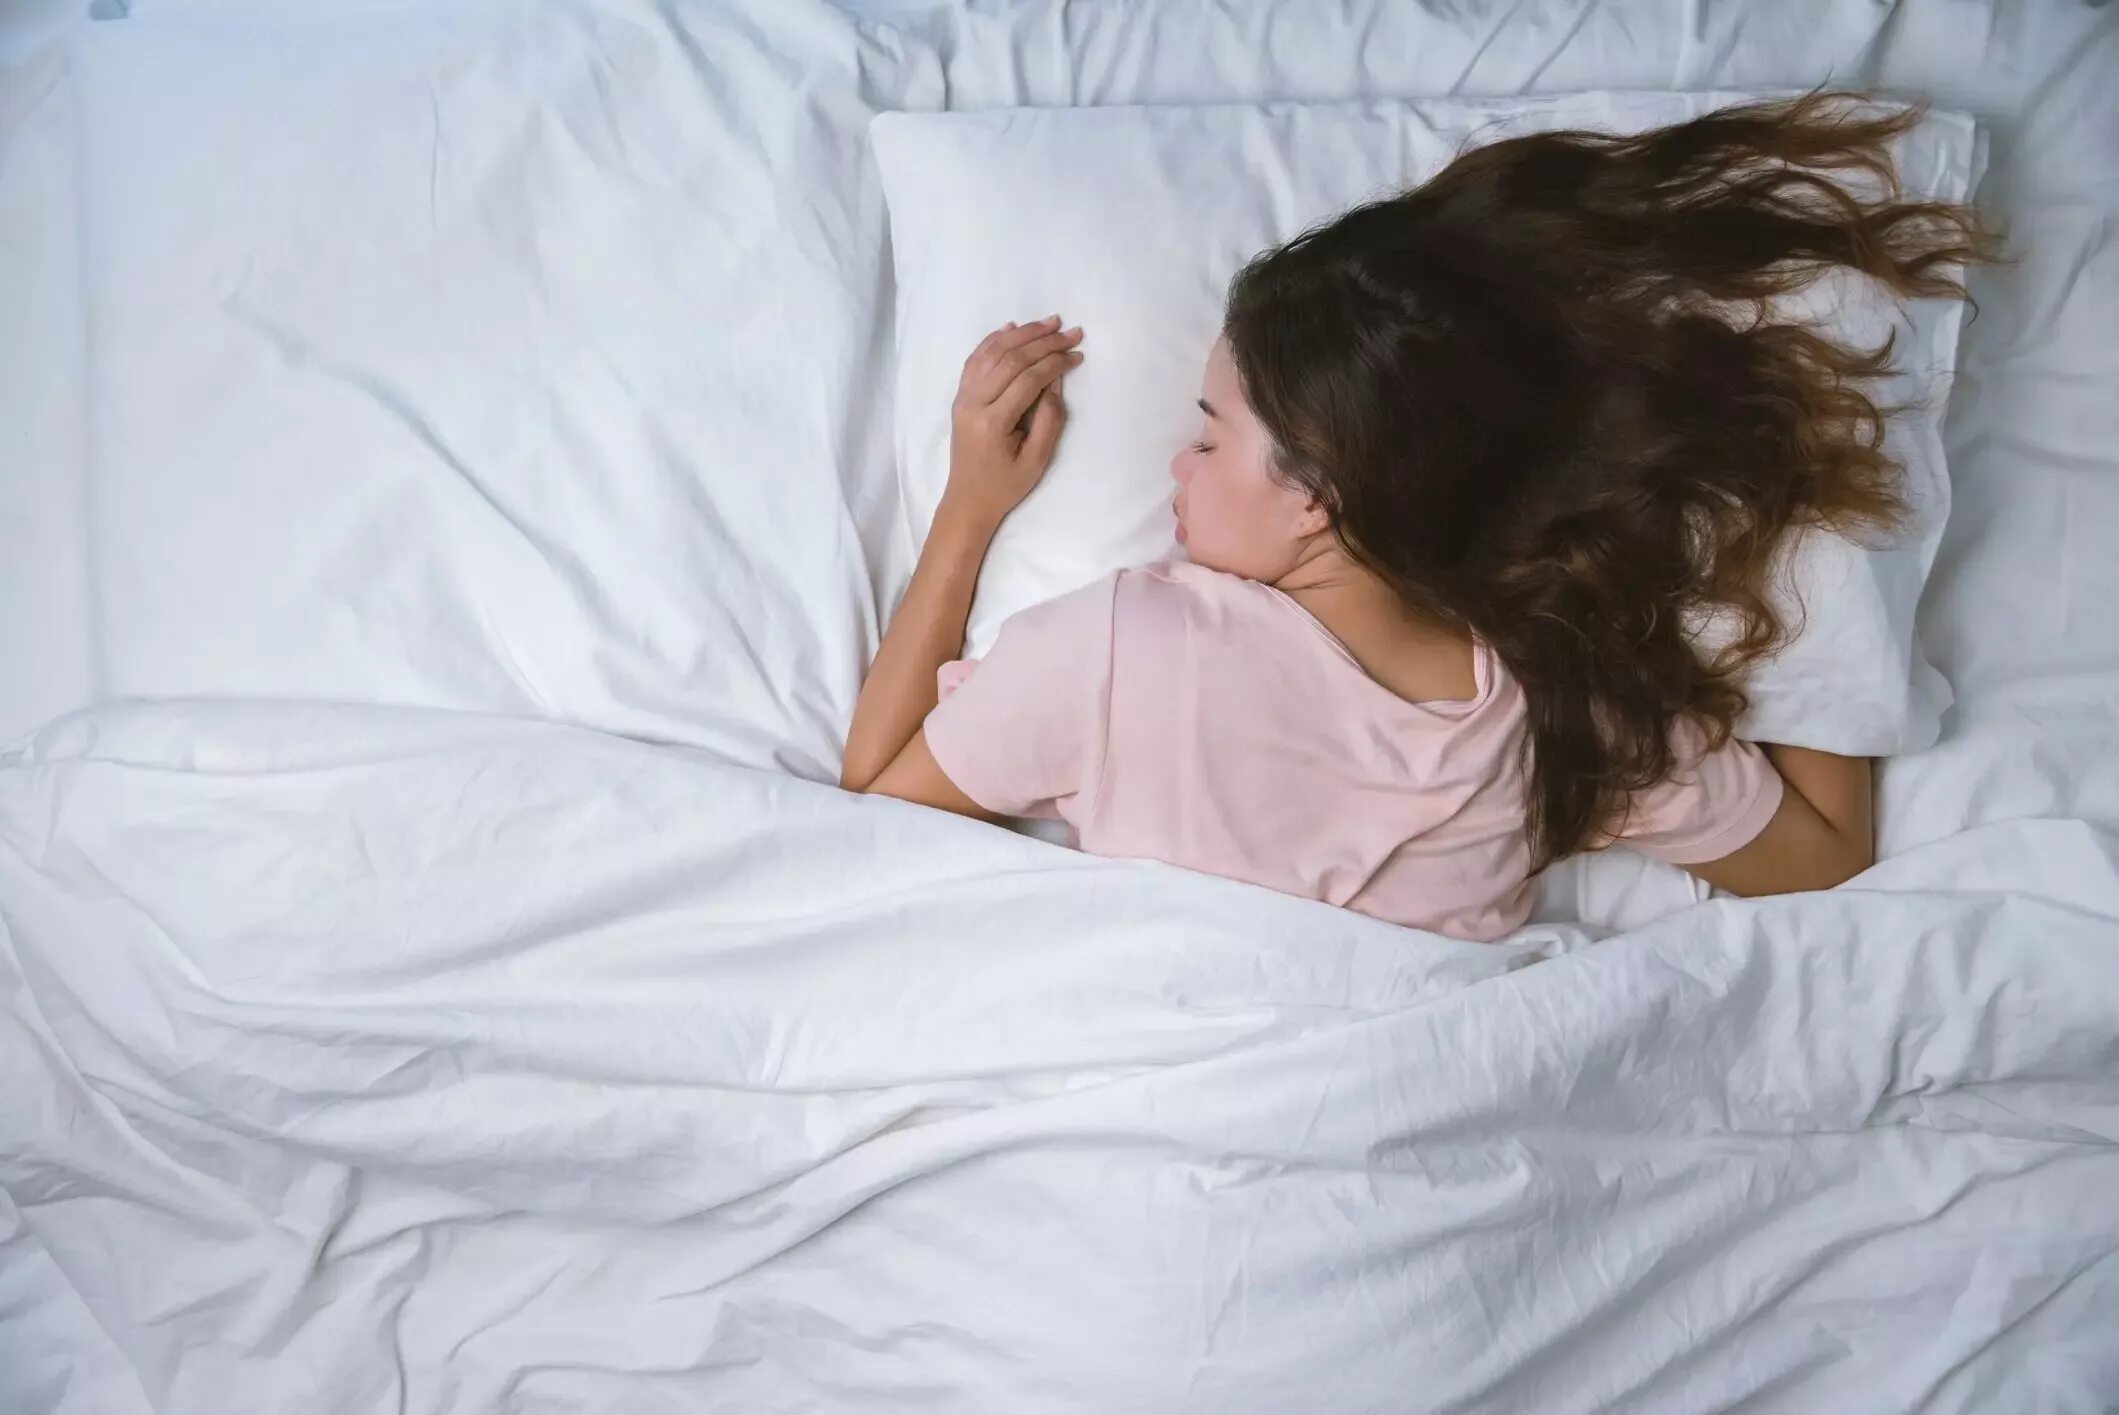 Девушка подросток в пижаме на кровати. Спящий подросток девочка.